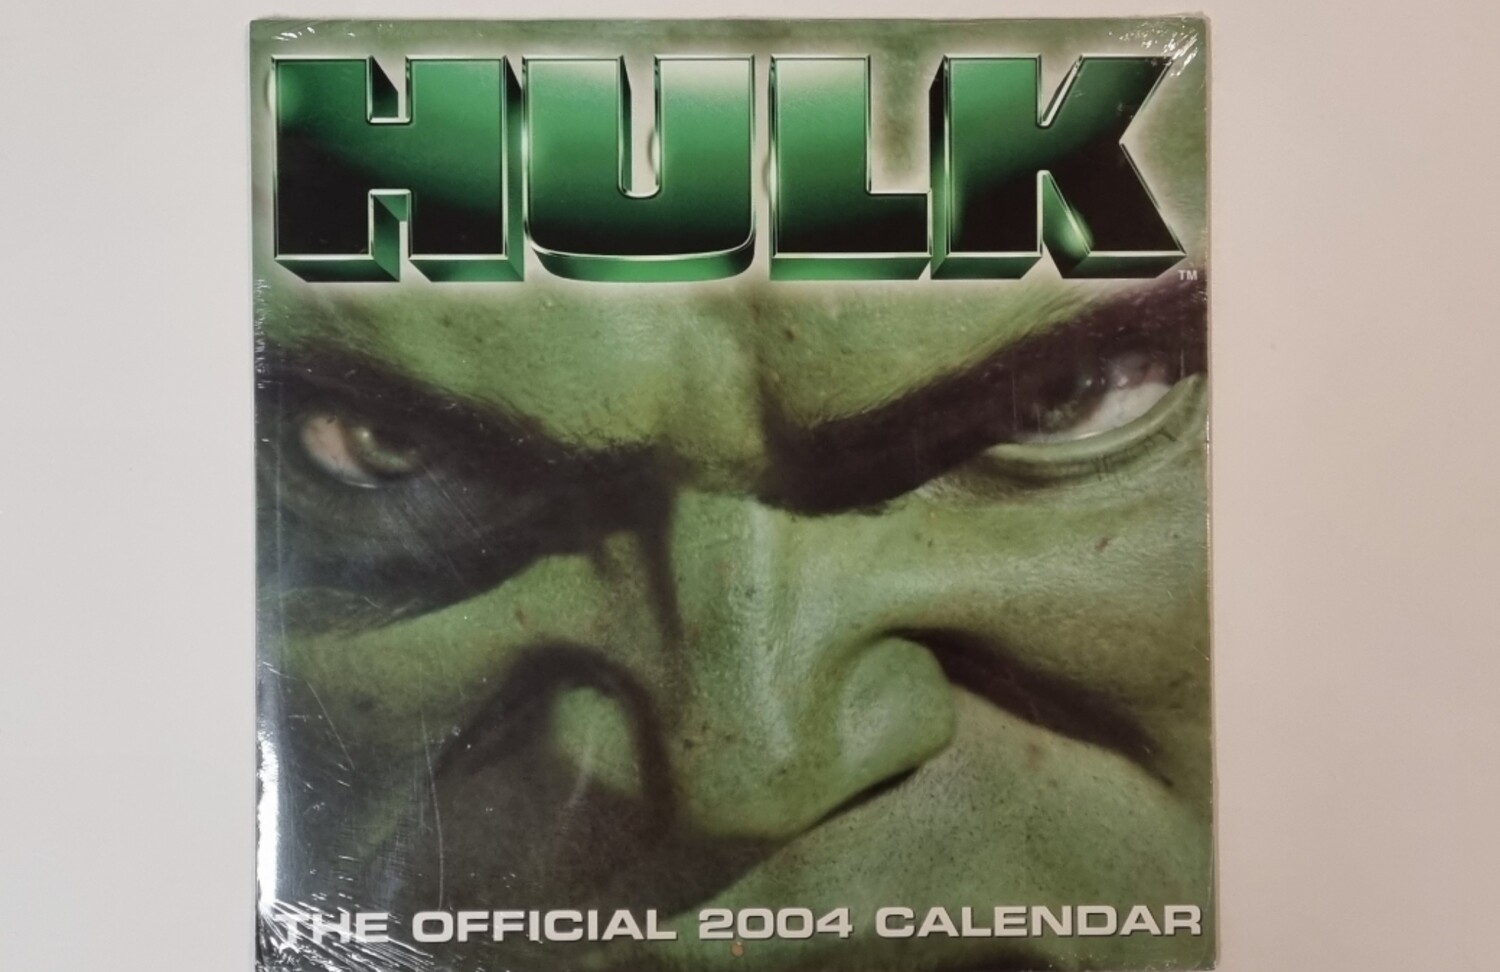 Kalender 2004, Hulk, The Official Calendar